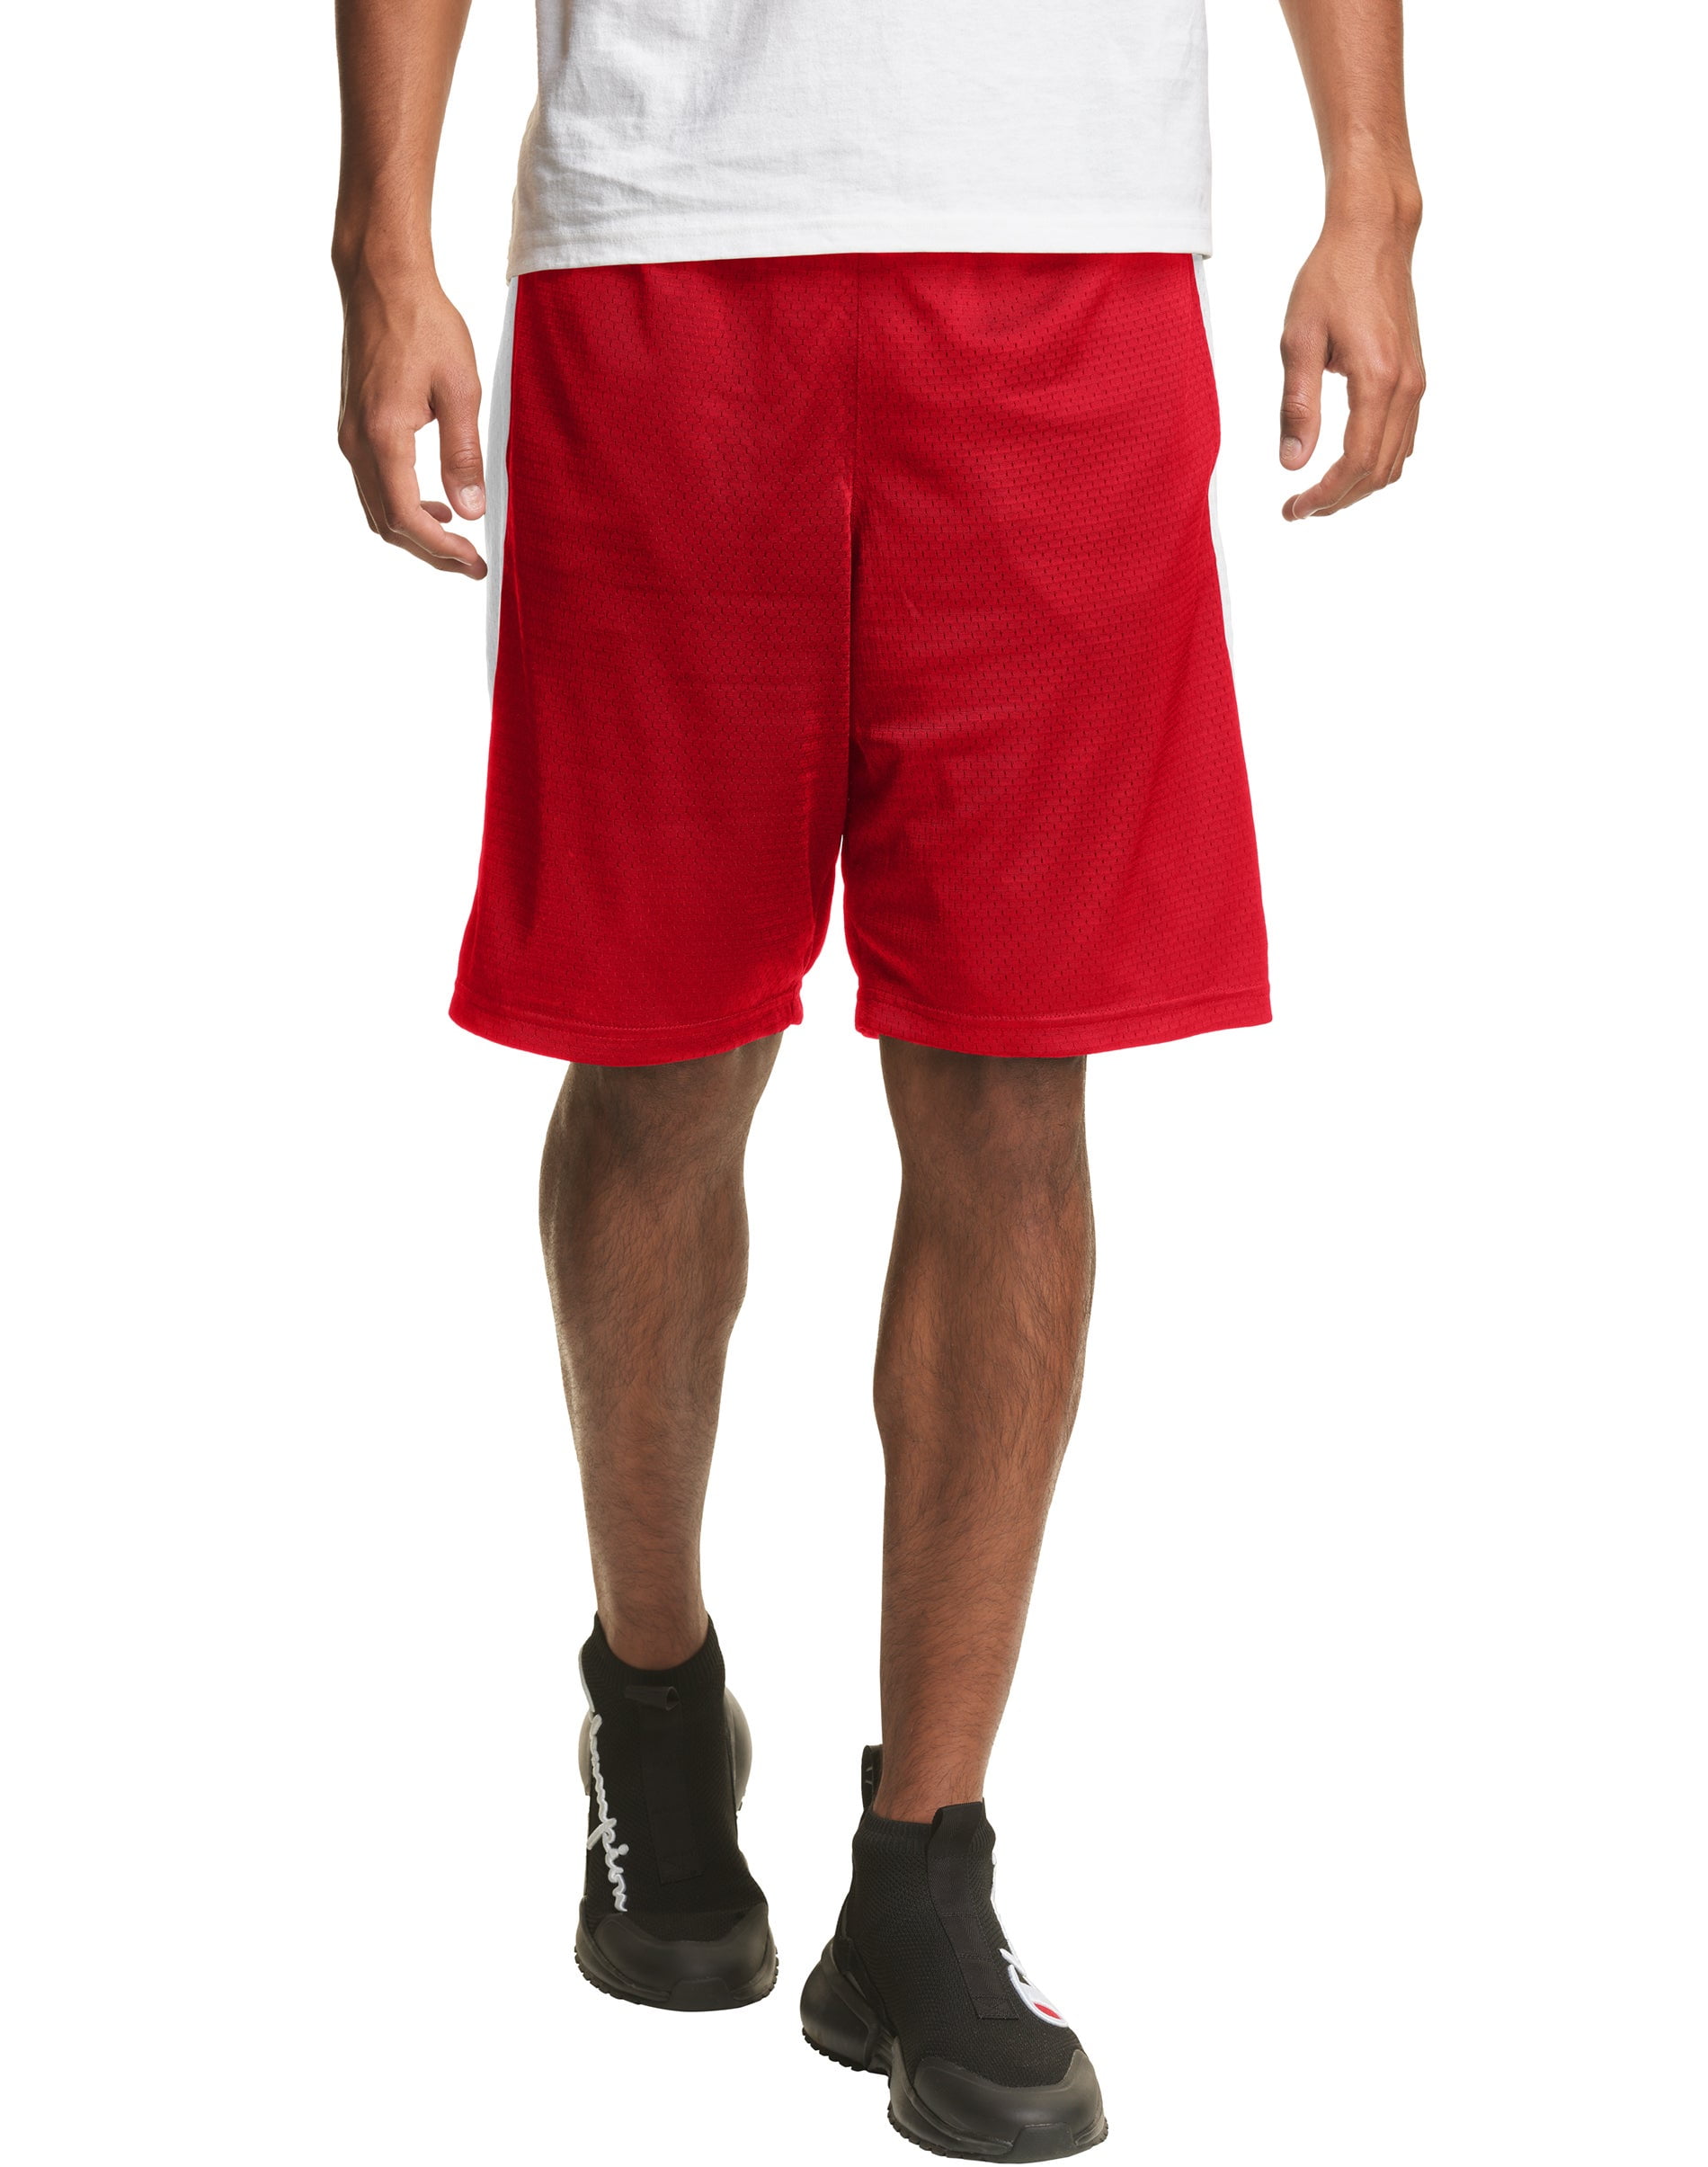 NBA Shorts NWT Mens XLarge XL Basketball Shorts W/Pockets Red NBA LOGO